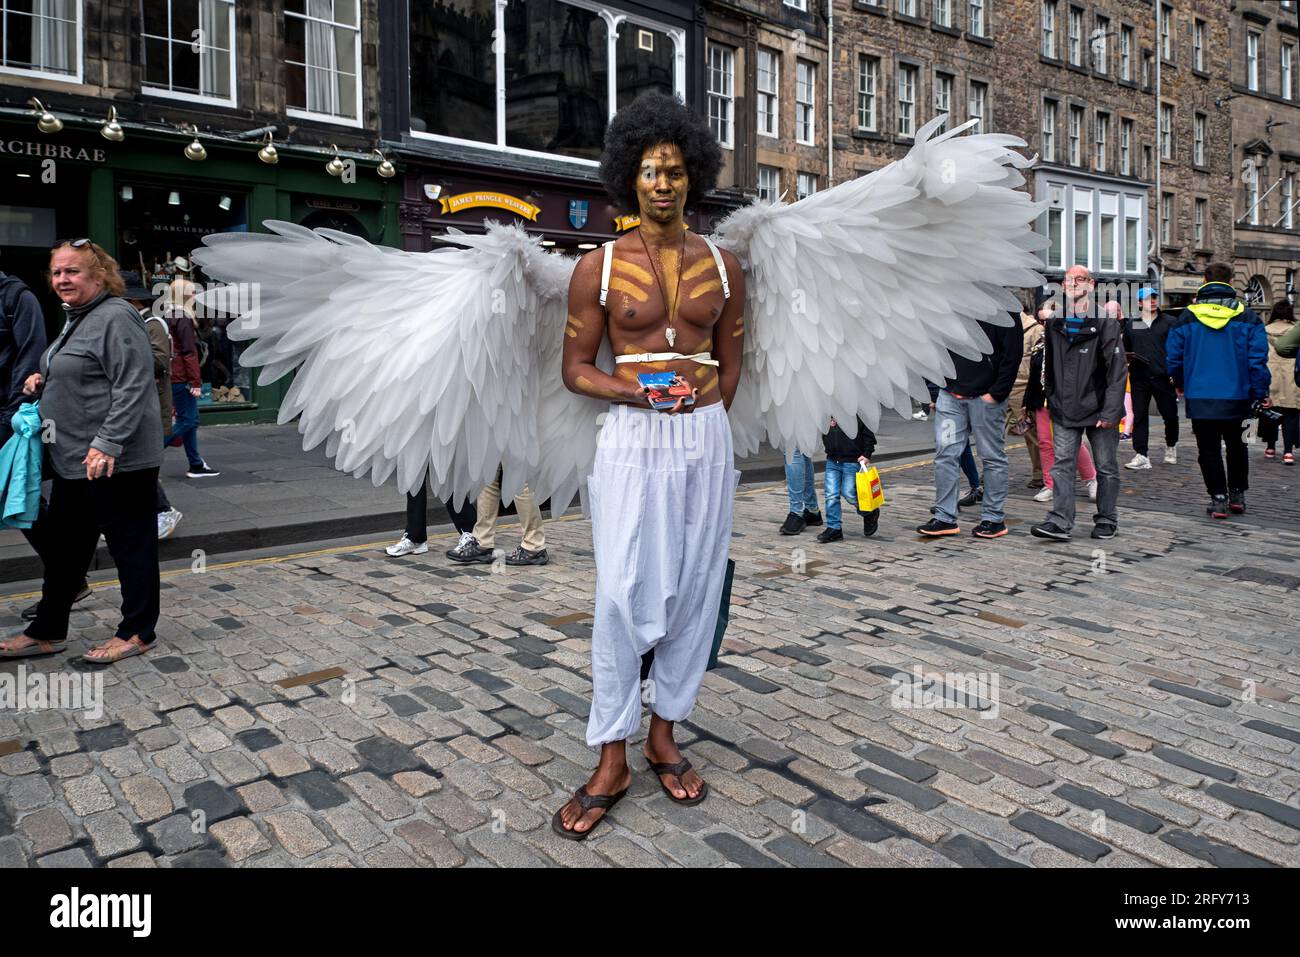 Deacon Griffin-Pressley bewerbt seine One-Manr-Show „Satan vs God“ auf der Royal Mile, Edinburgh, Schottland, Großbritannien. Stockfoto